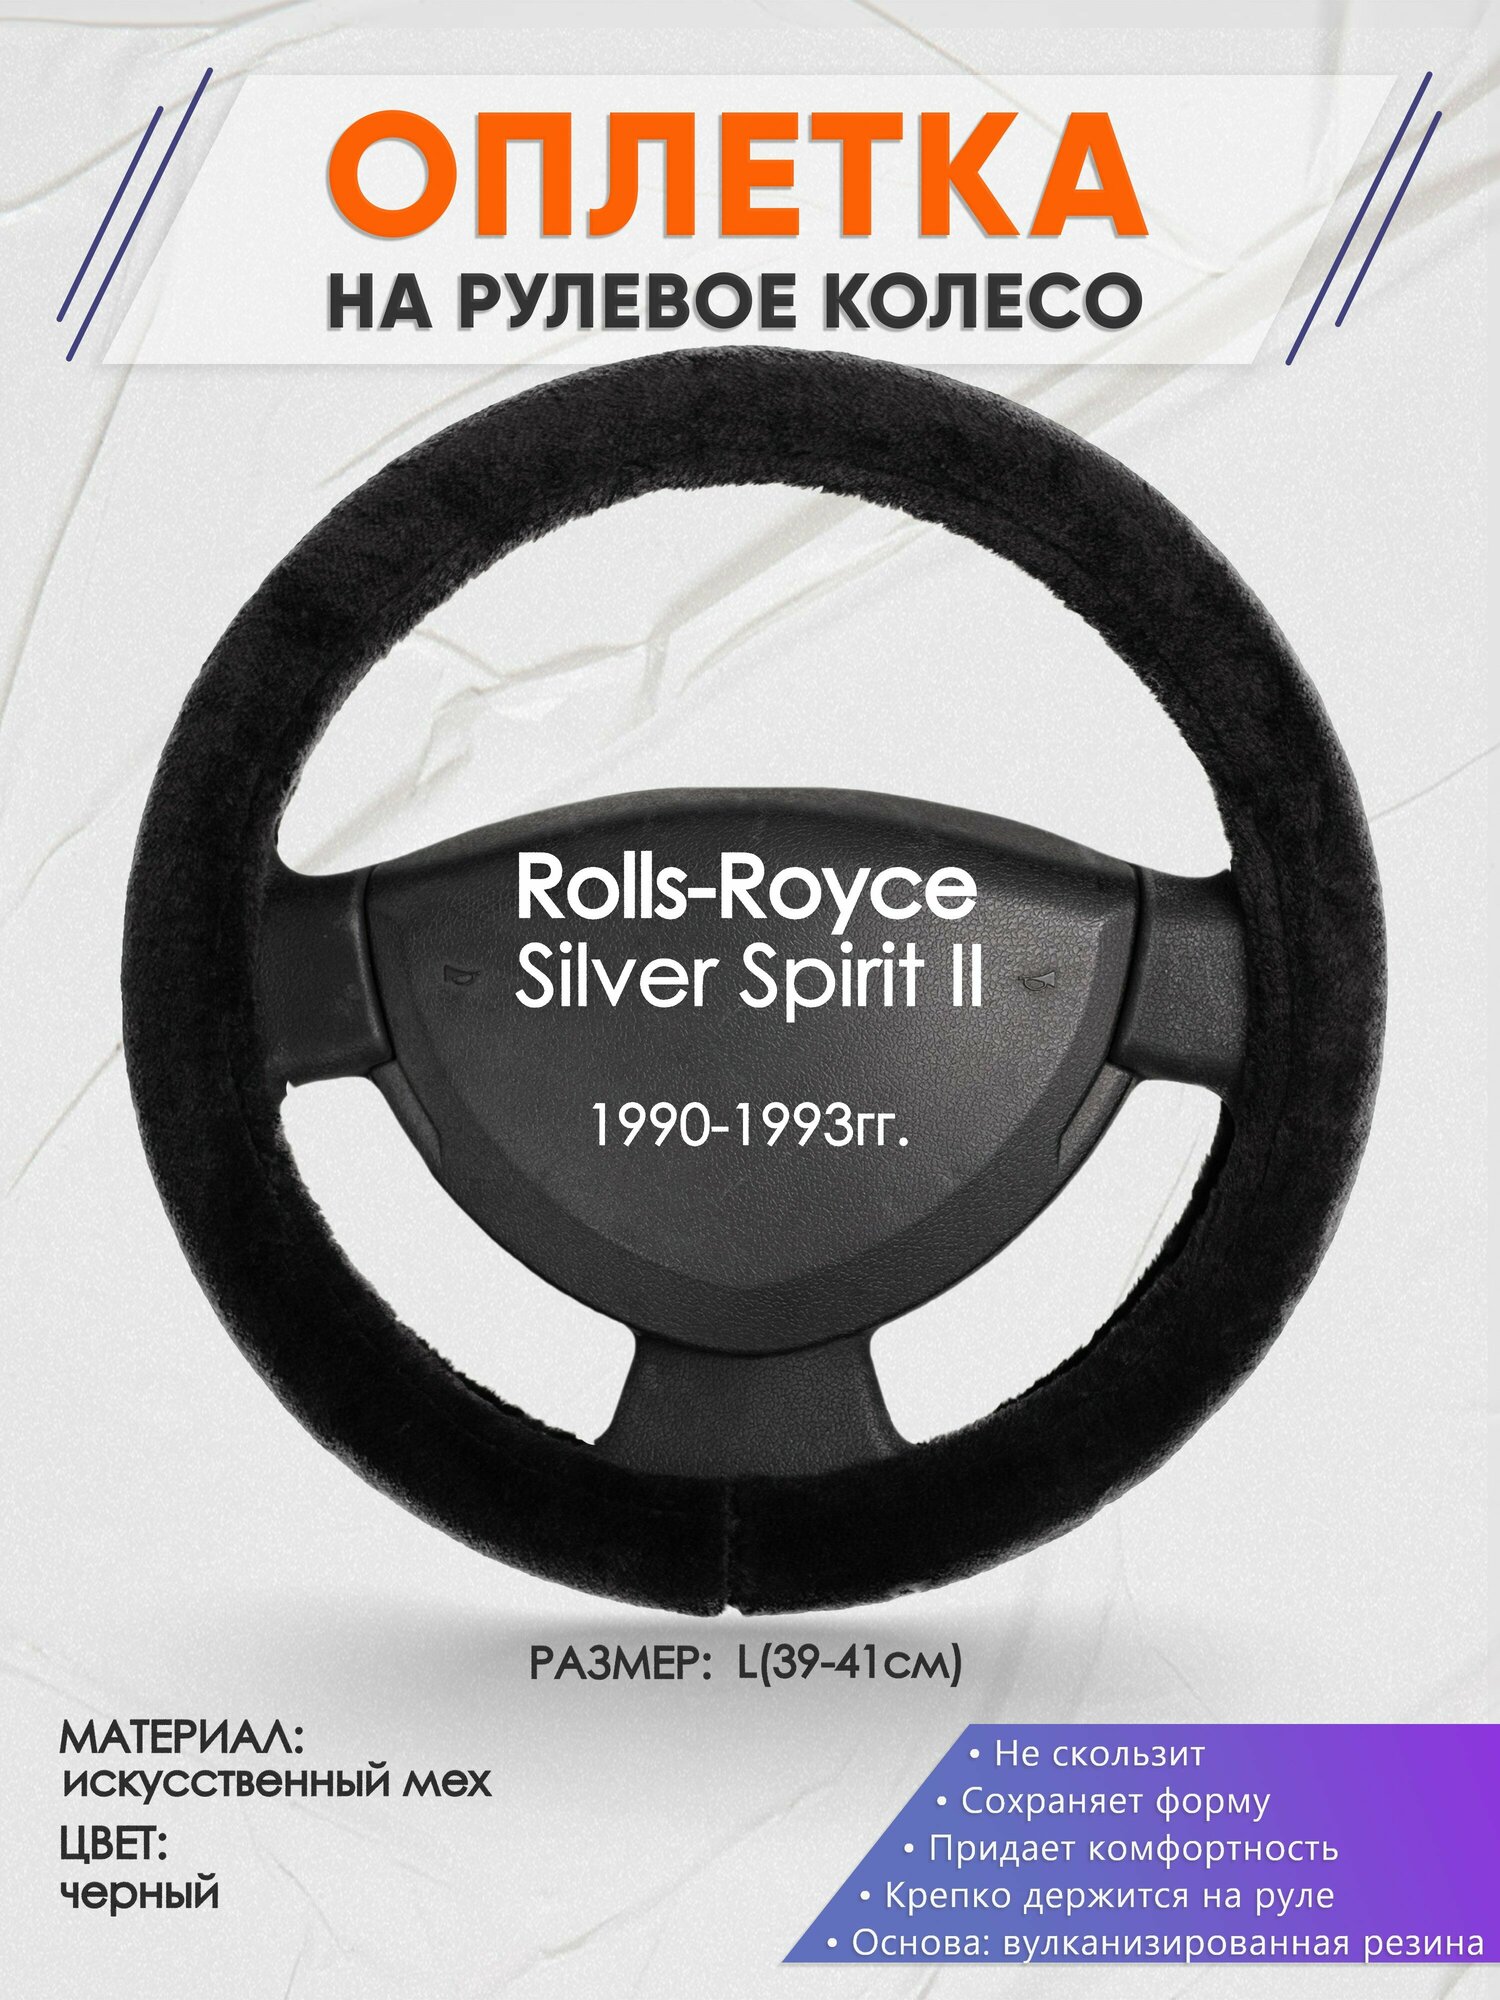 Оплетка на руль для Rolls-Royce Silver Spirit 2(РоллсРойс Силвер Спирит) 1990-1993, L(39-41см), Искусственный мех 45